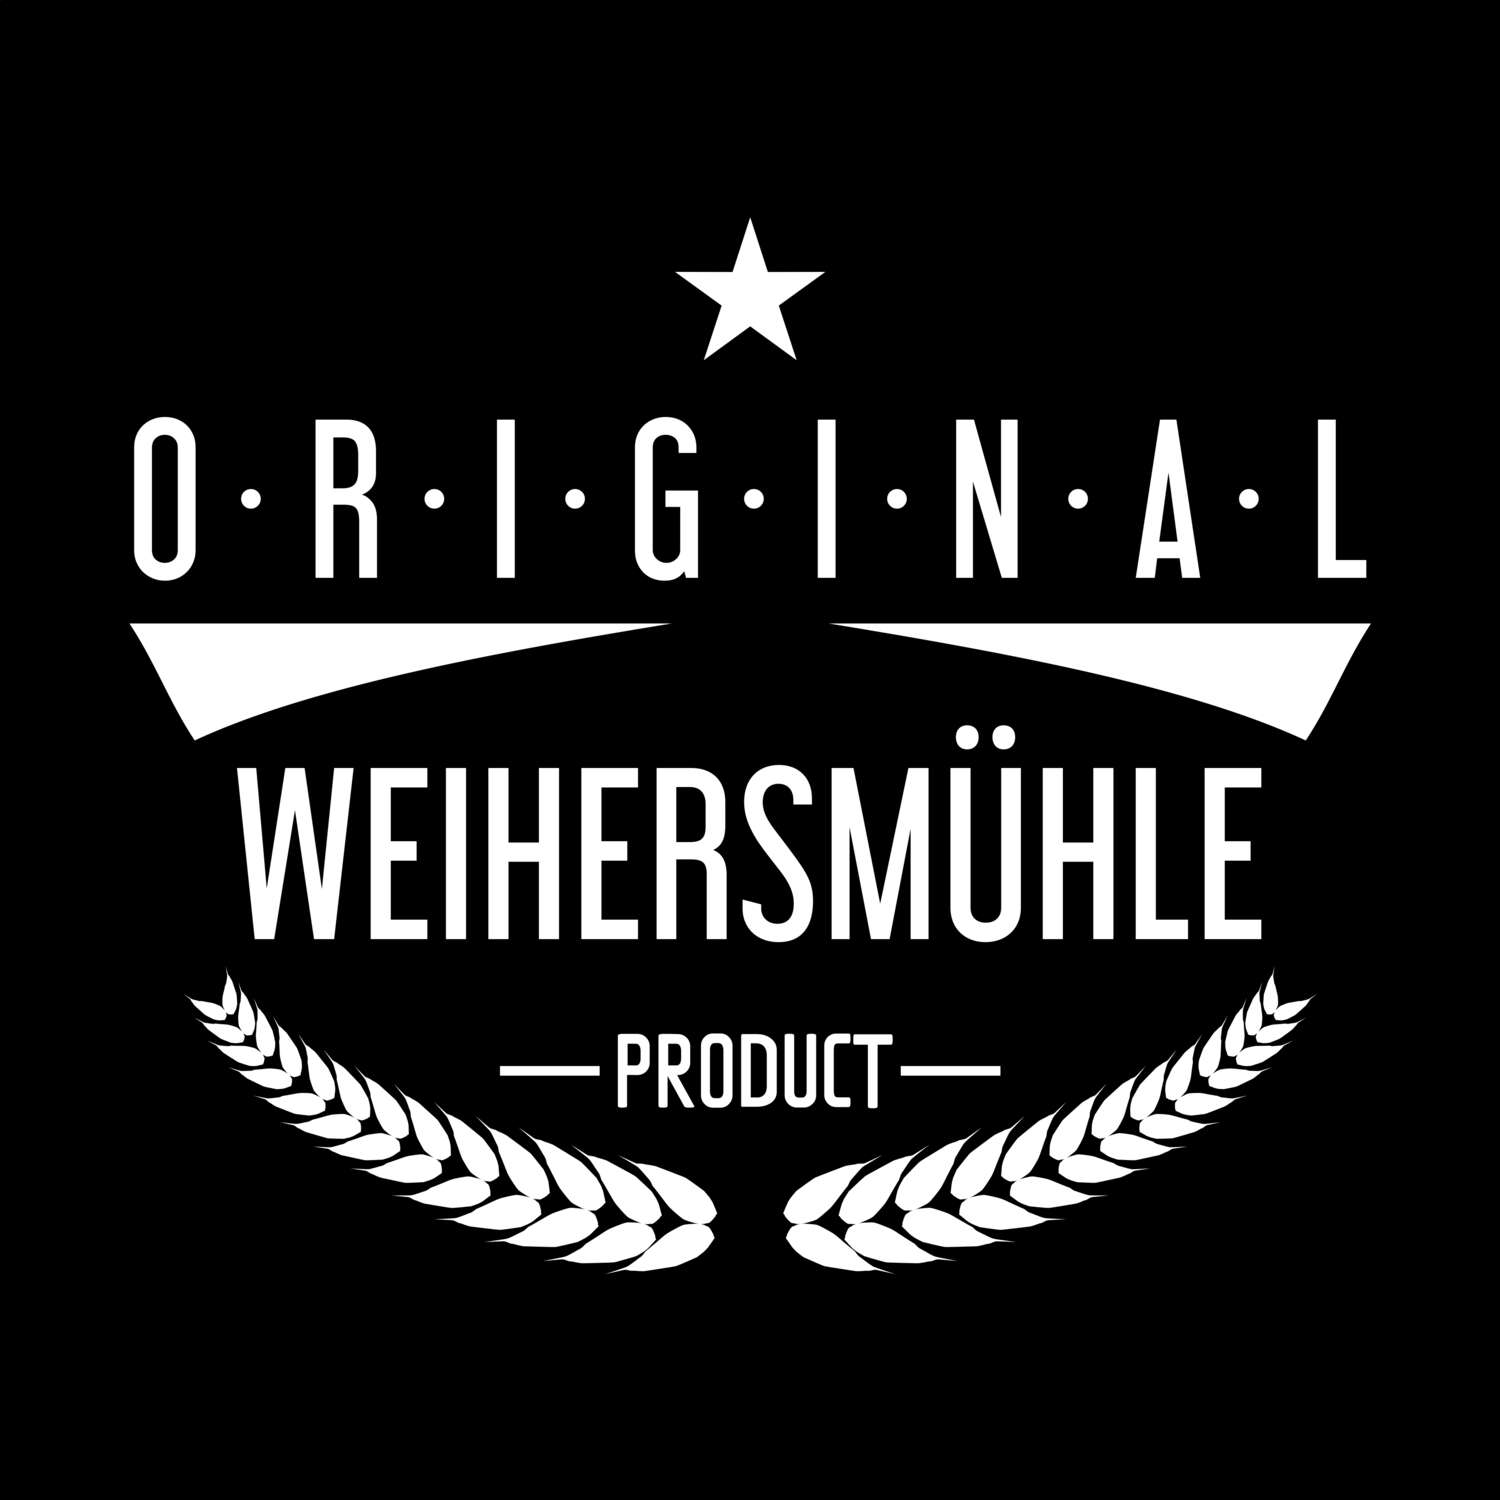 Weihersmühle T-Shirt »Original Product«